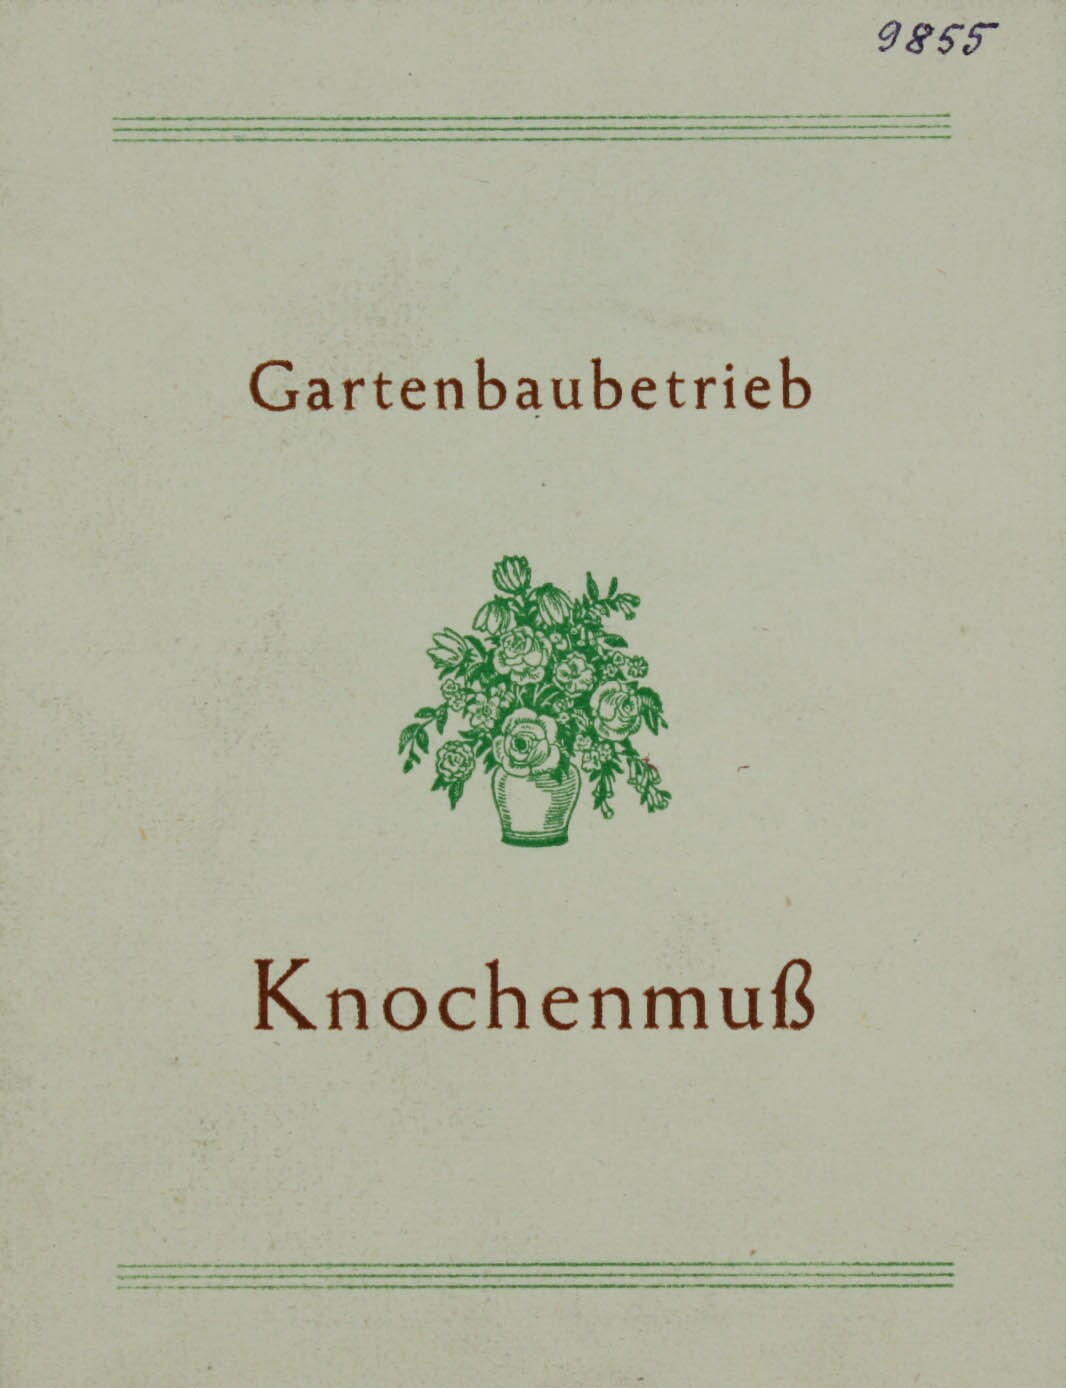 Jubiläumskarte zum 50-jährigen Bestehen des Gartenbaubetriebes Knochenmuß, Wolmirstedt (1948) (Museum Wolmirstedt RR-F)